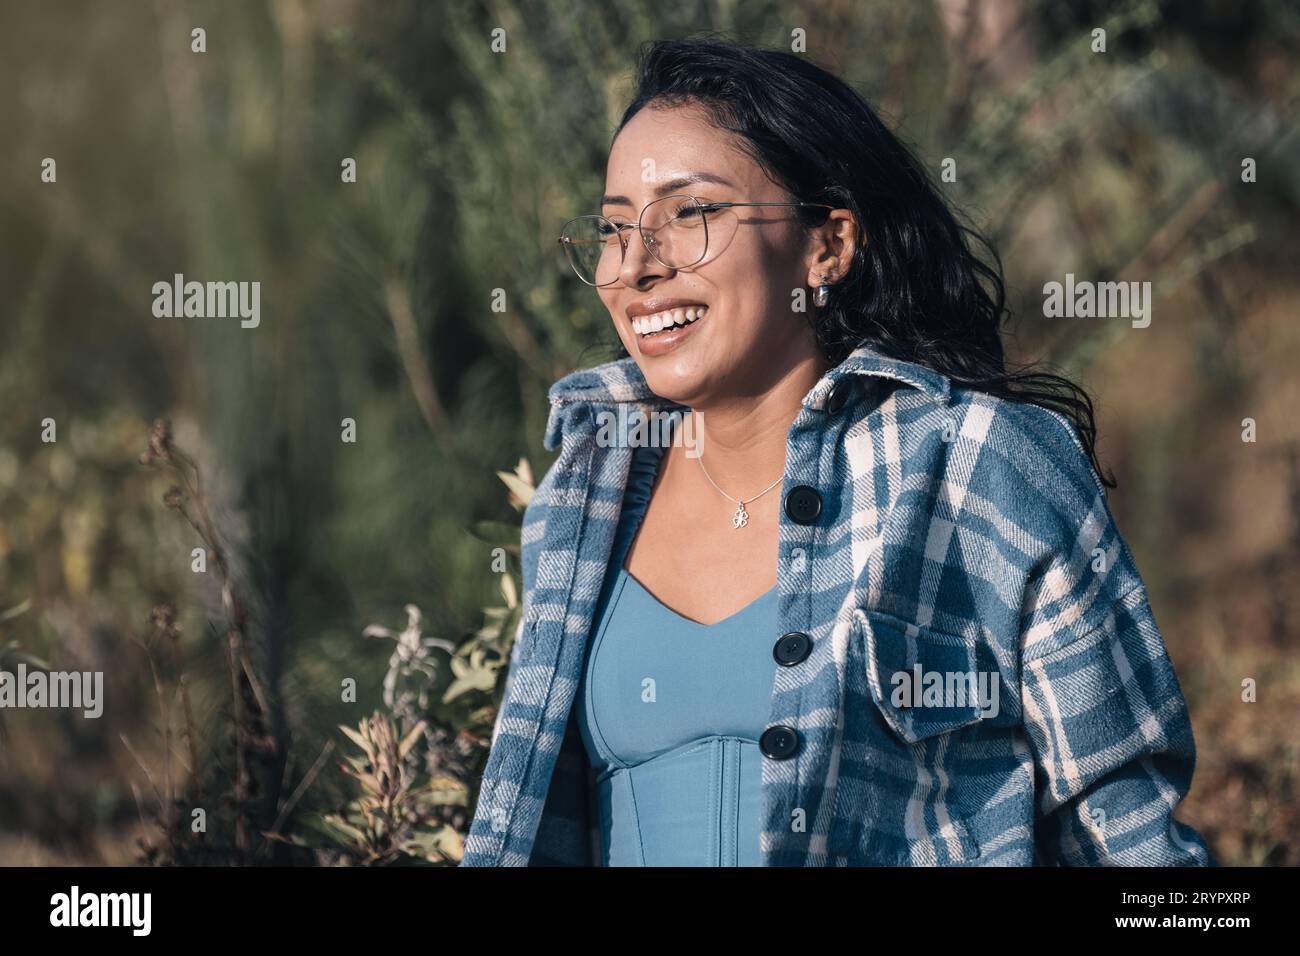 Eine schöne junge Frau mit Brille lächelt beim Sonnenuntergang in der Natur Stockfoto